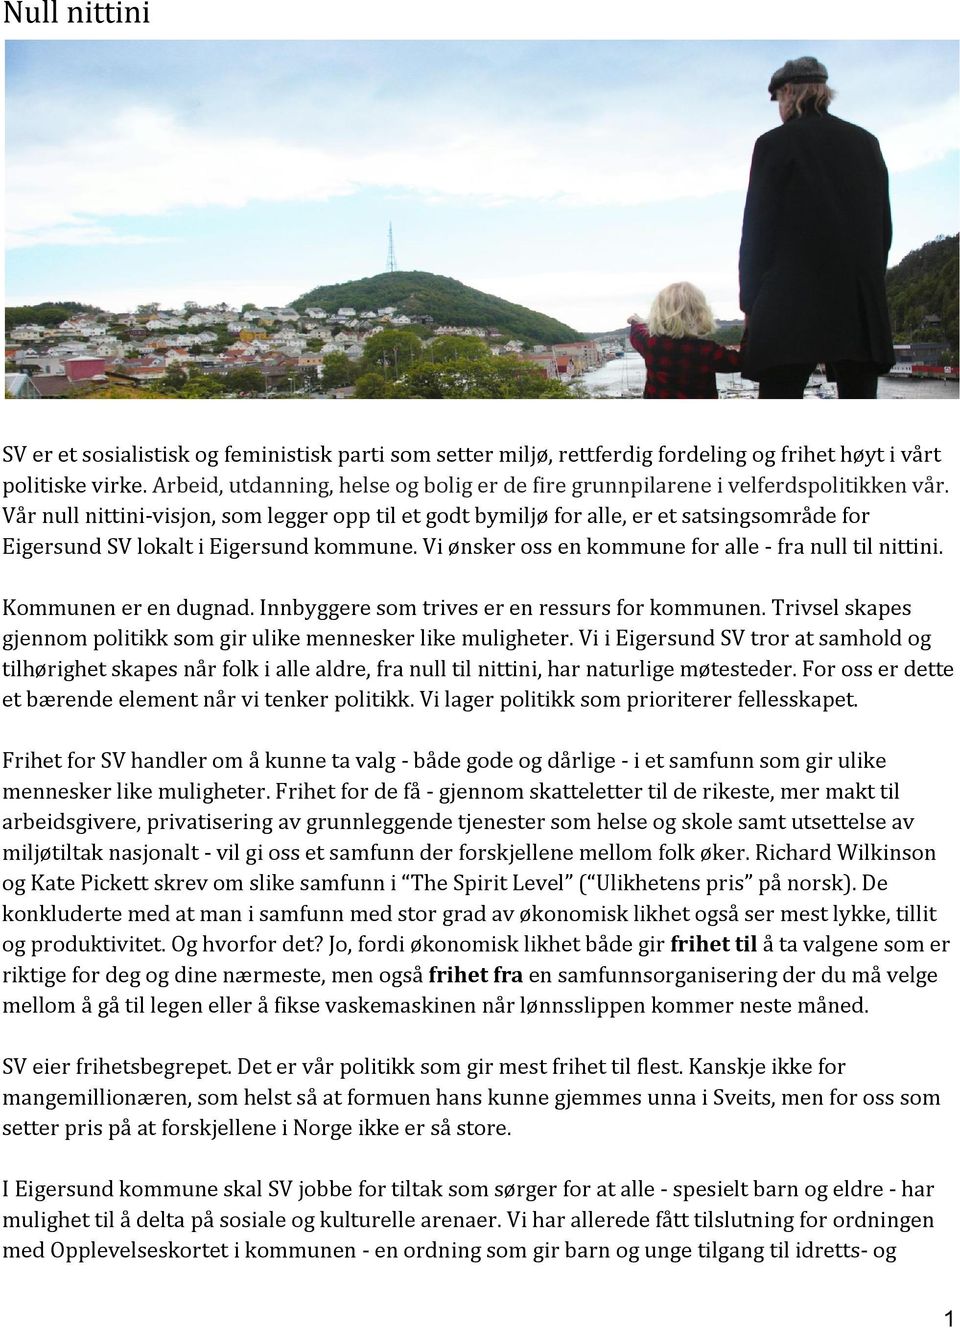 Vår null nittini-visjon, som legger opp til et godt bymiljø for alle, er et satsingsområde for Eigersund SV lokalt i Eigersund kommune. Vi ønsker oss en kommune for alle - fra null til nittini.